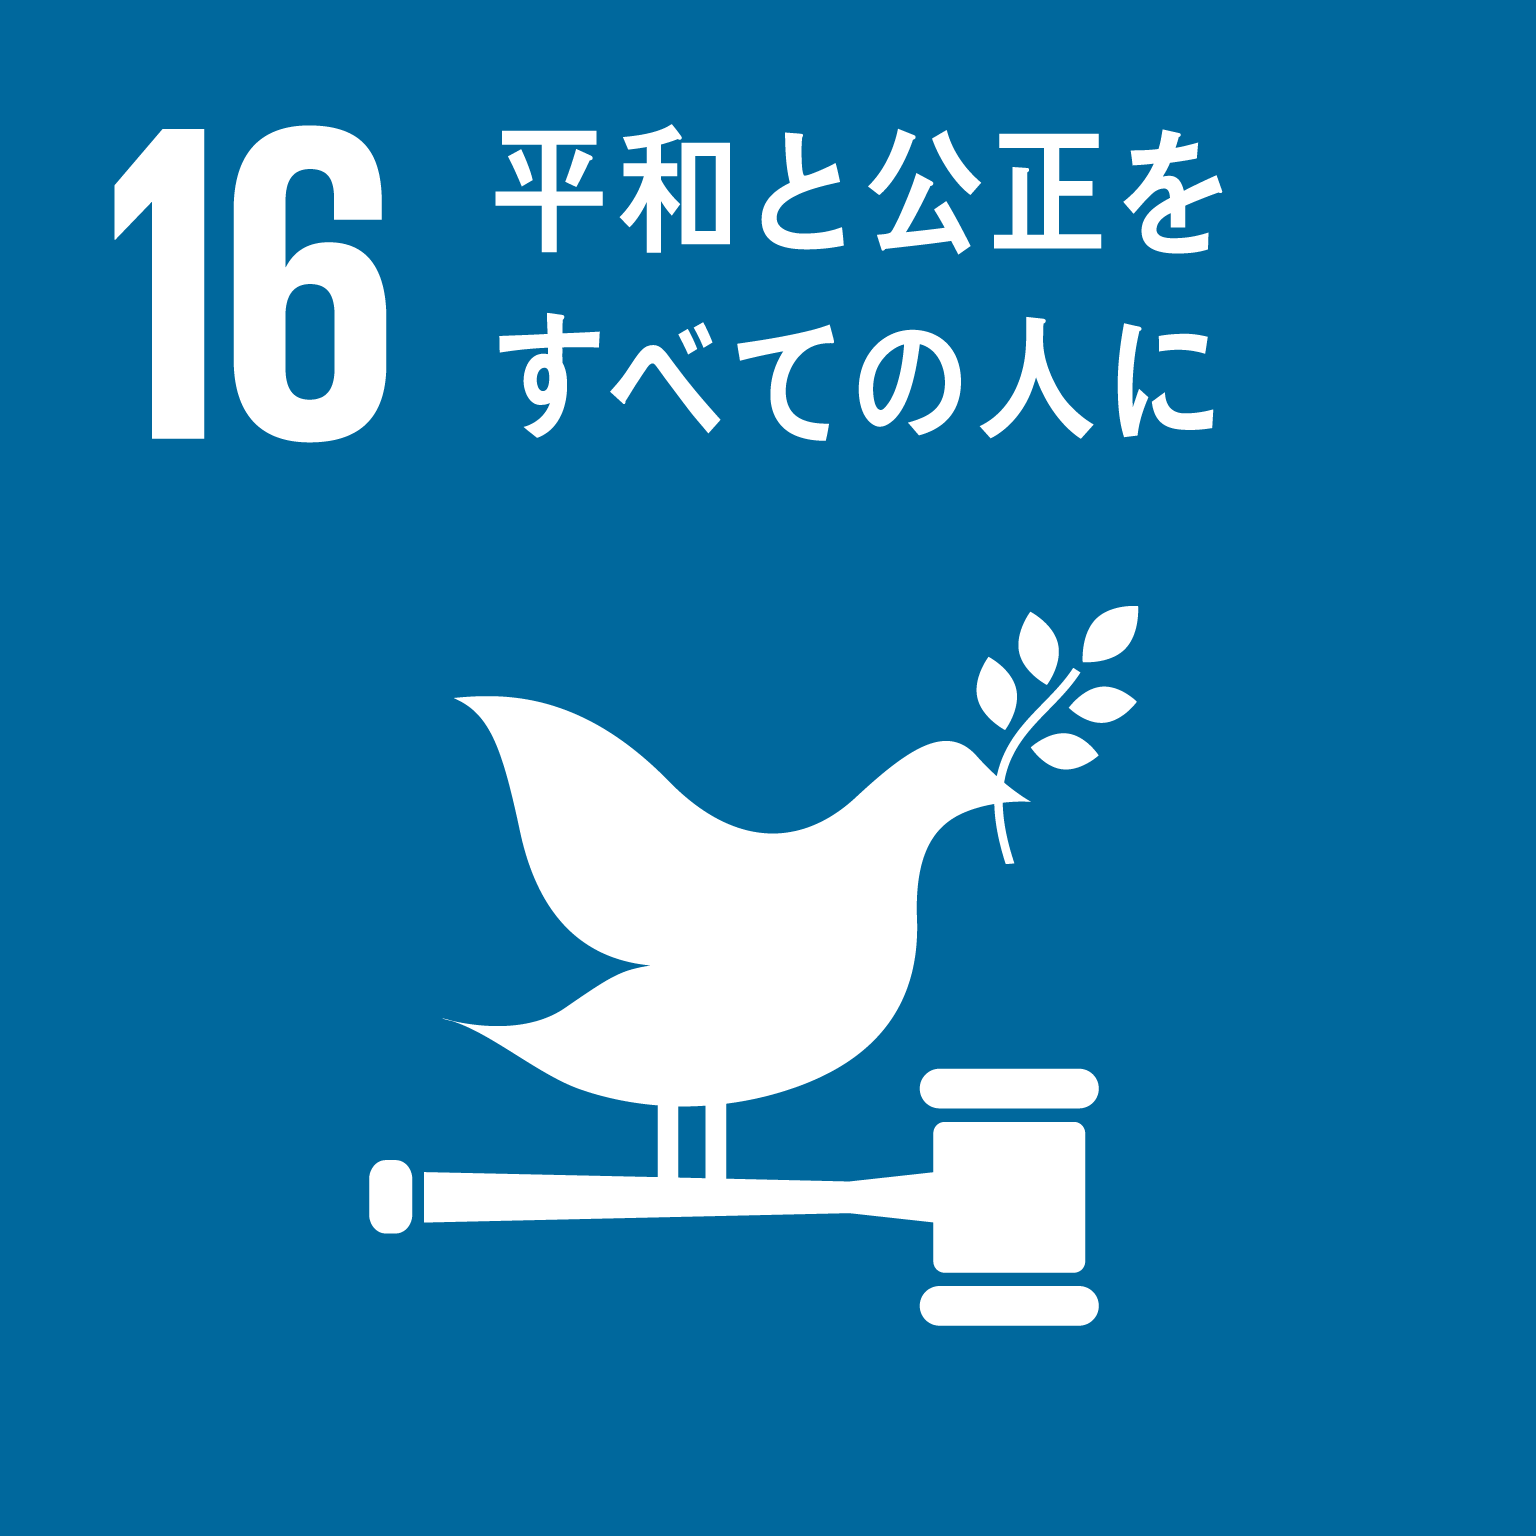 目標16平和と公正をすべての人にのロゴ